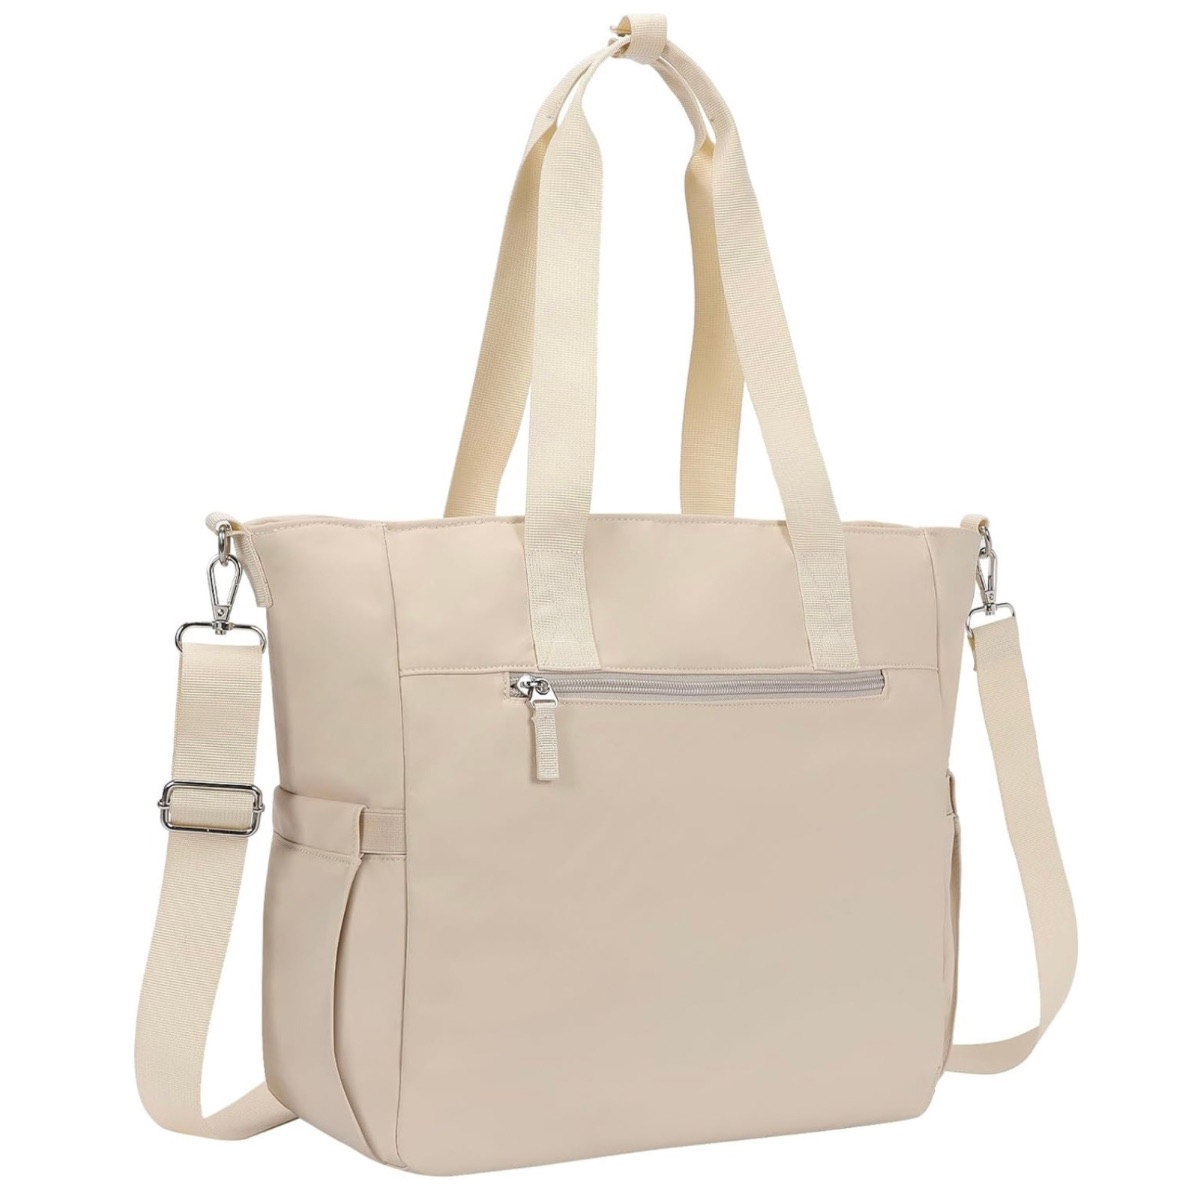 Zipper Top Tote Bags $6-$9+ | Smart Savers